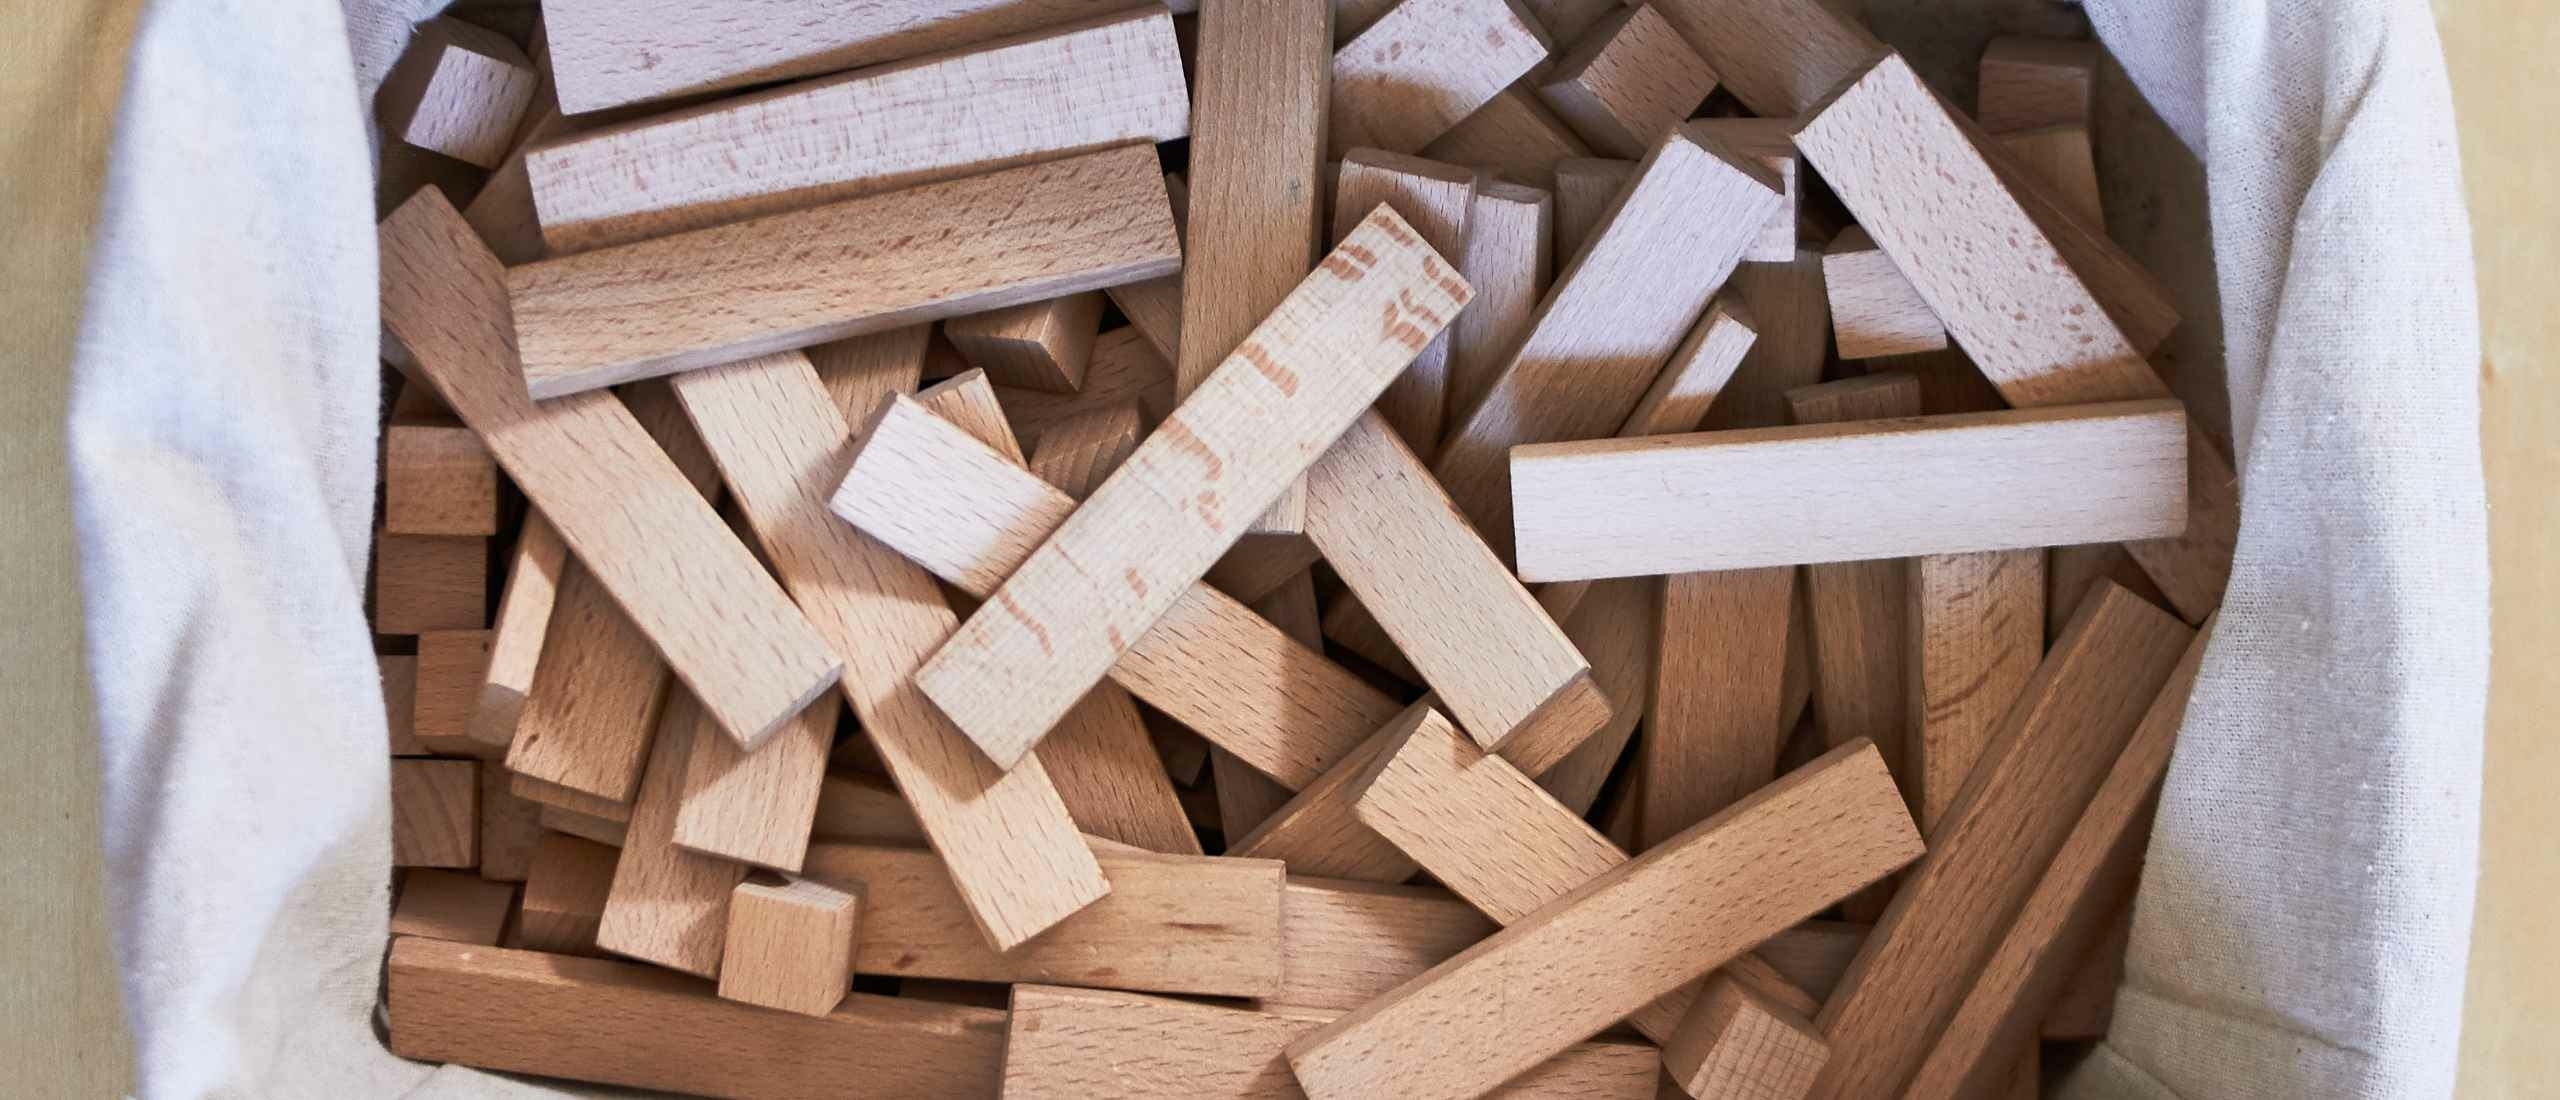 KAPLA Blokjes - De veelzijdige houten blokkenset voor kinderen van alle leeftijden